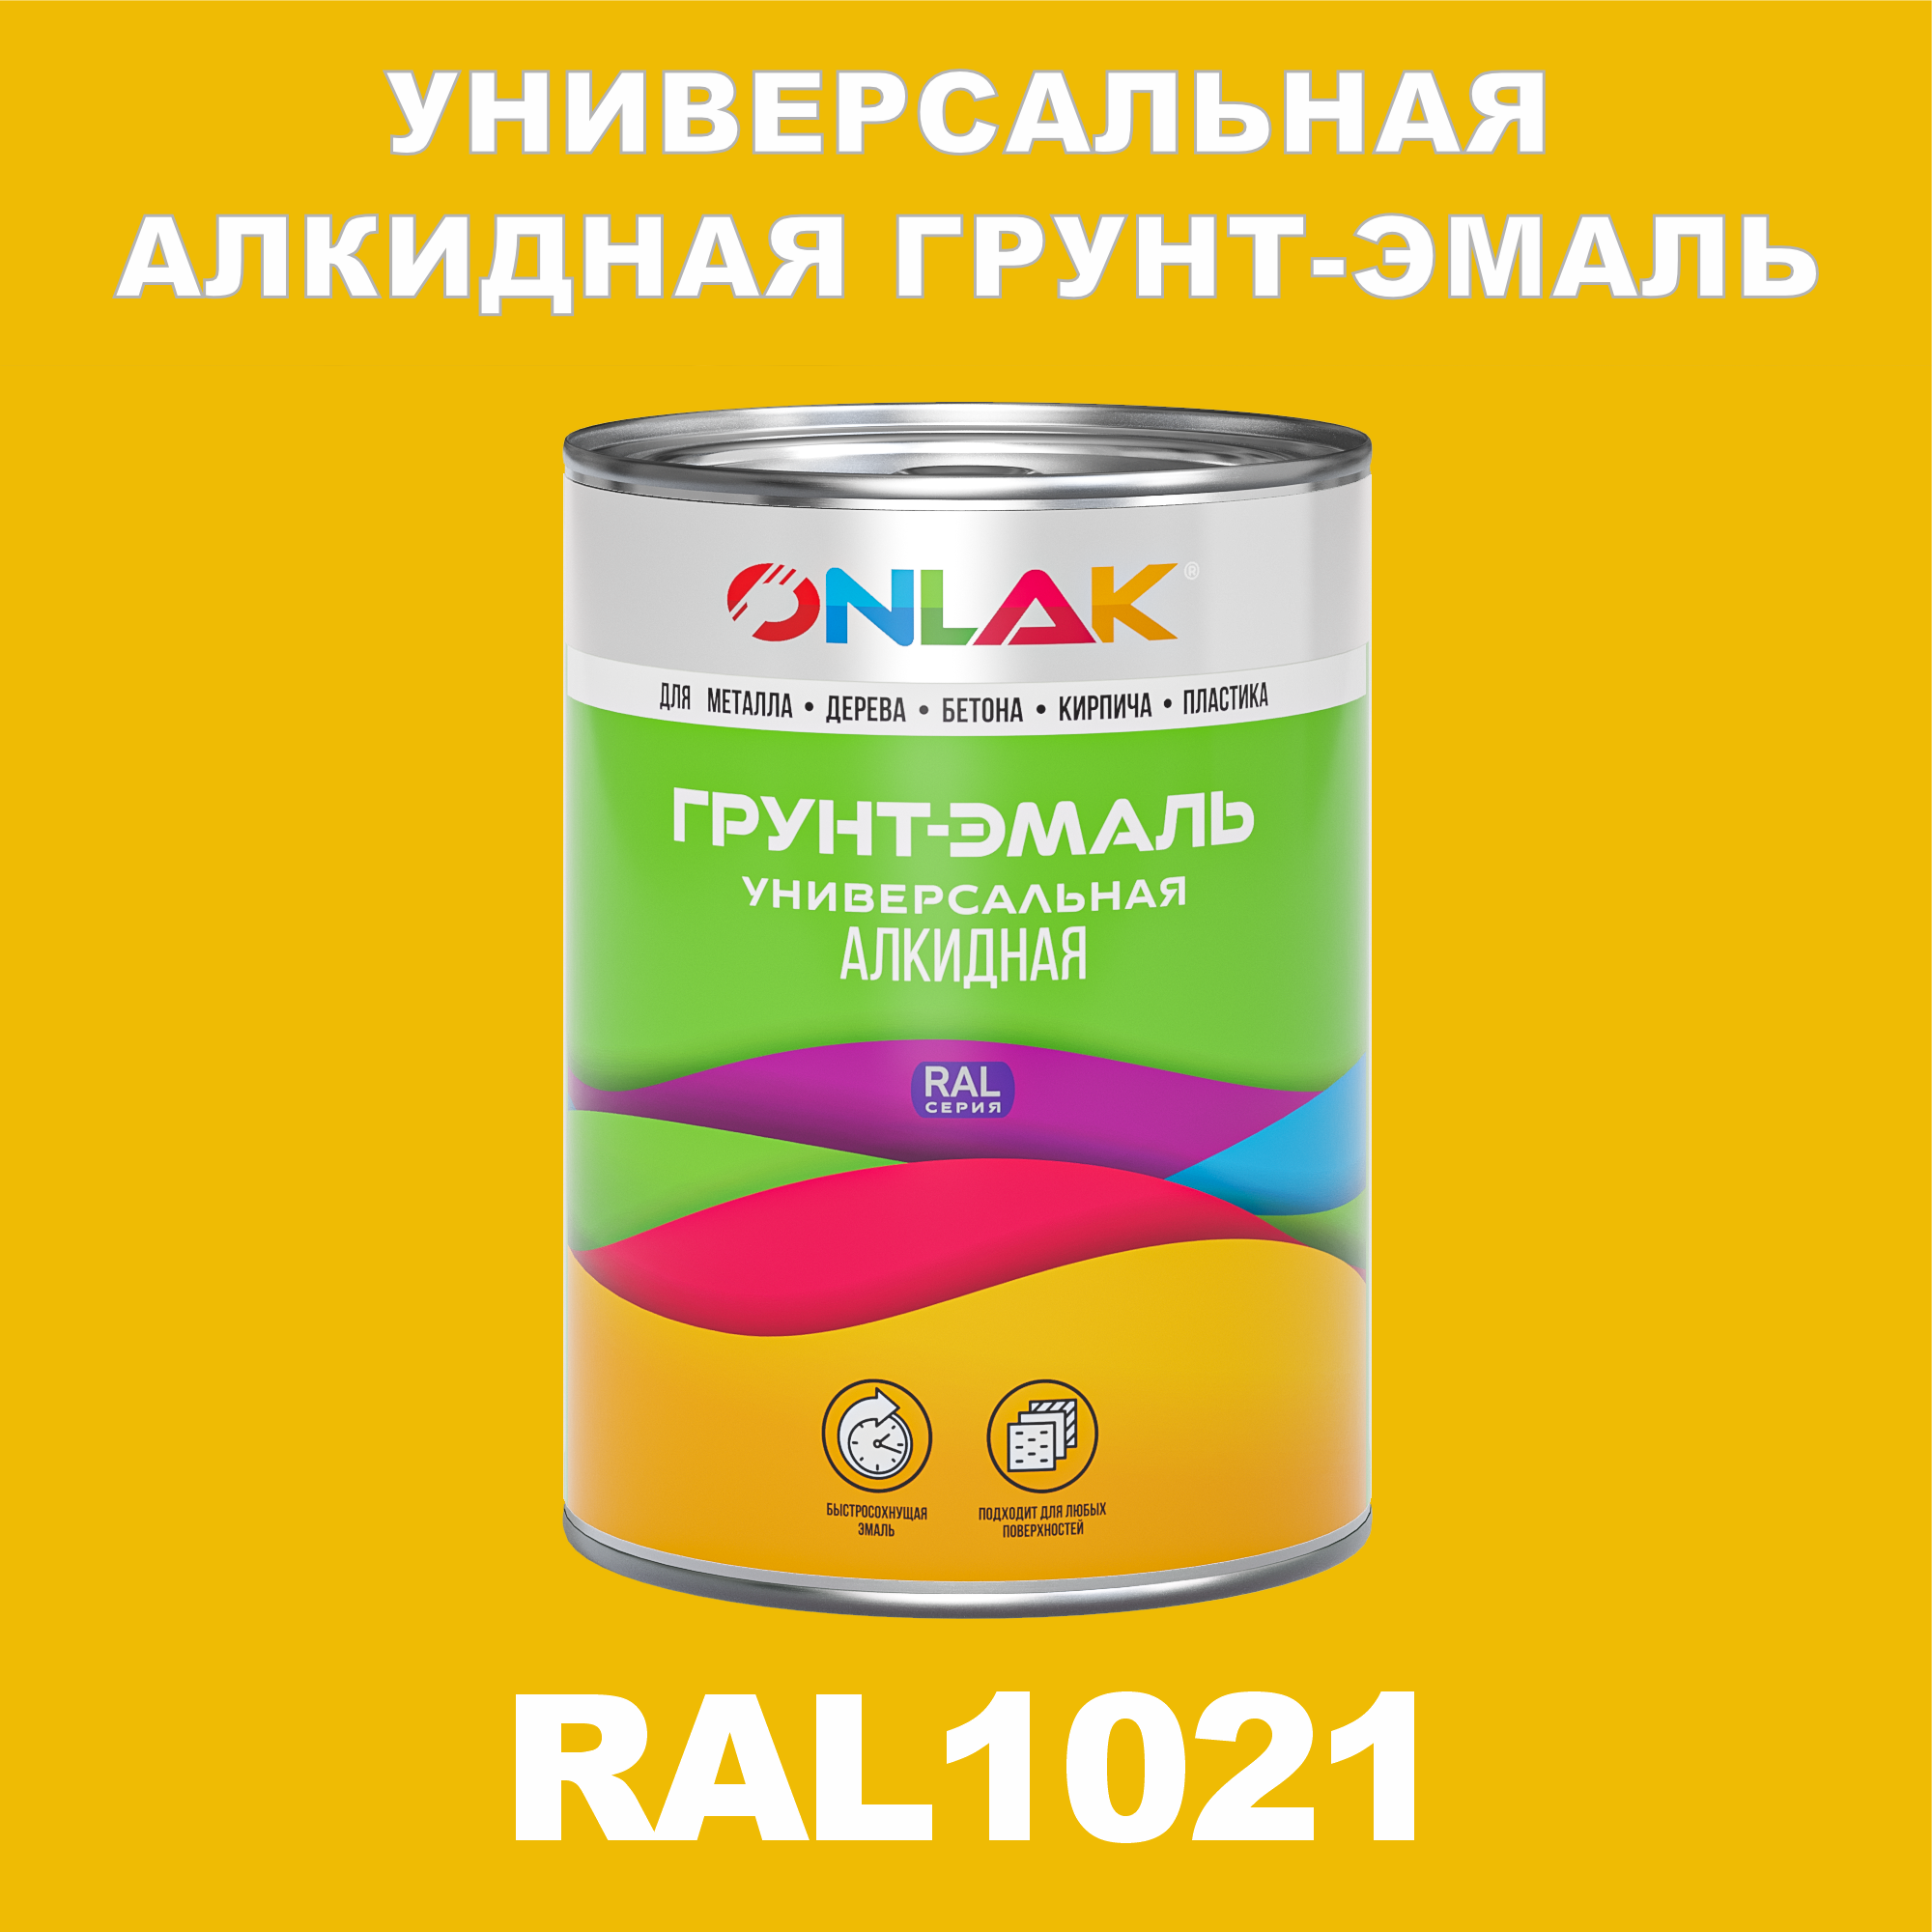 Грунт-эмаль ONLAK 1К RAL1021 антикоррозионная алкидная по металлу по ржавчине 1 кг грунт эмаль yollo по ржавчине алкидная серая 0 9 кг